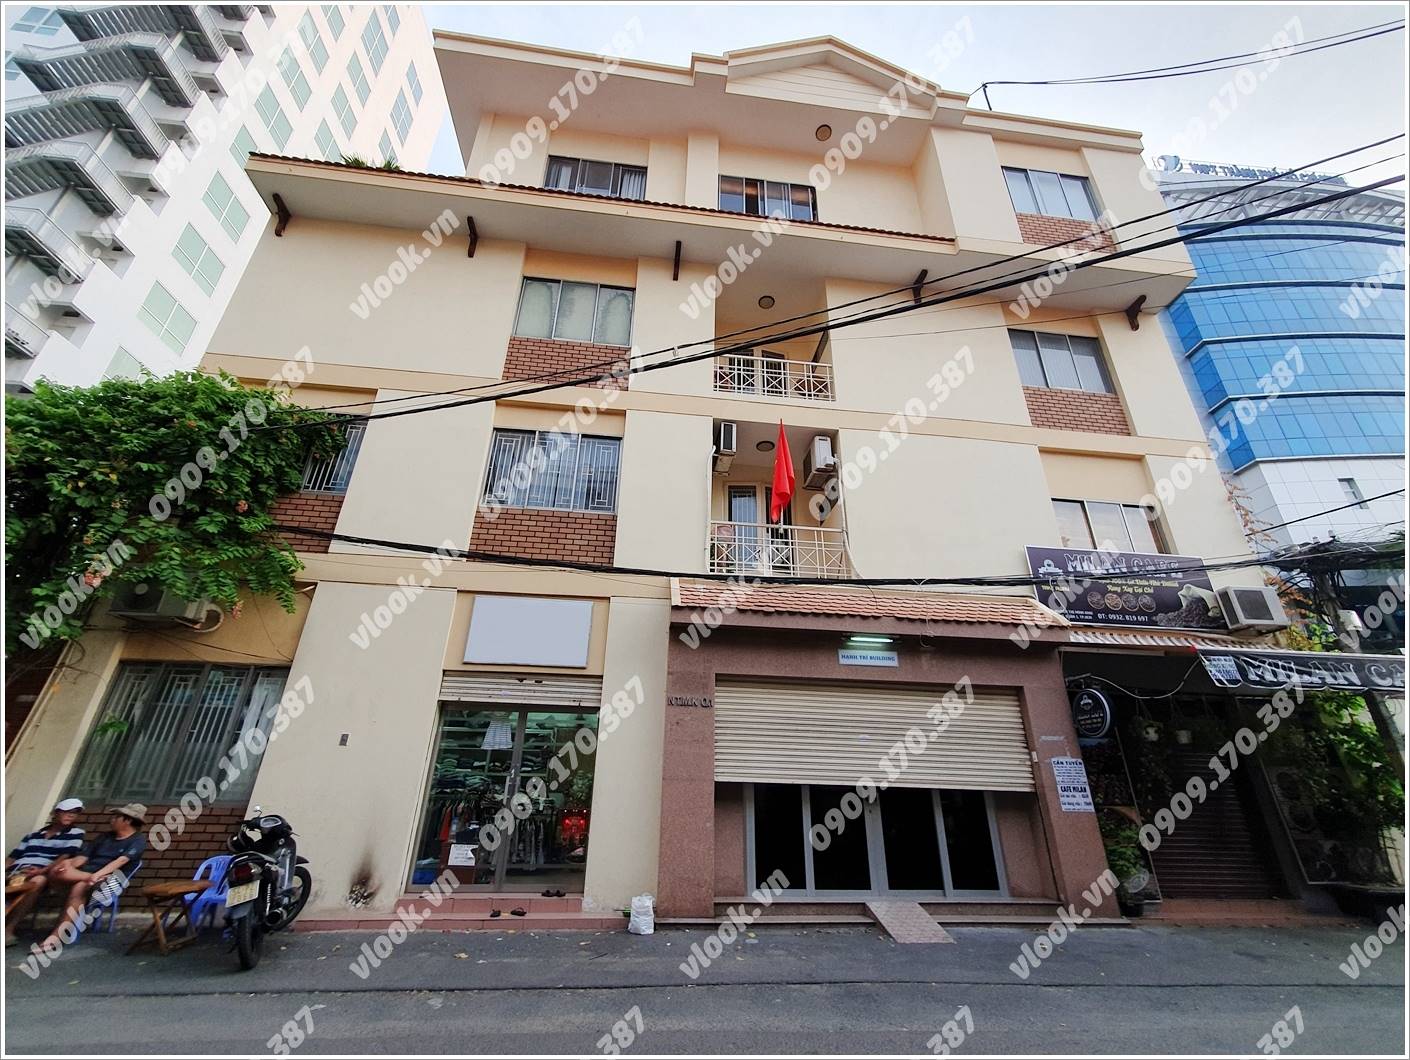 Cao ốc cho thuê văn phòng Hạnh Trí Building, Nguyễn Thị Minh Khai, Quận 1, TPHCM - vlook.vn